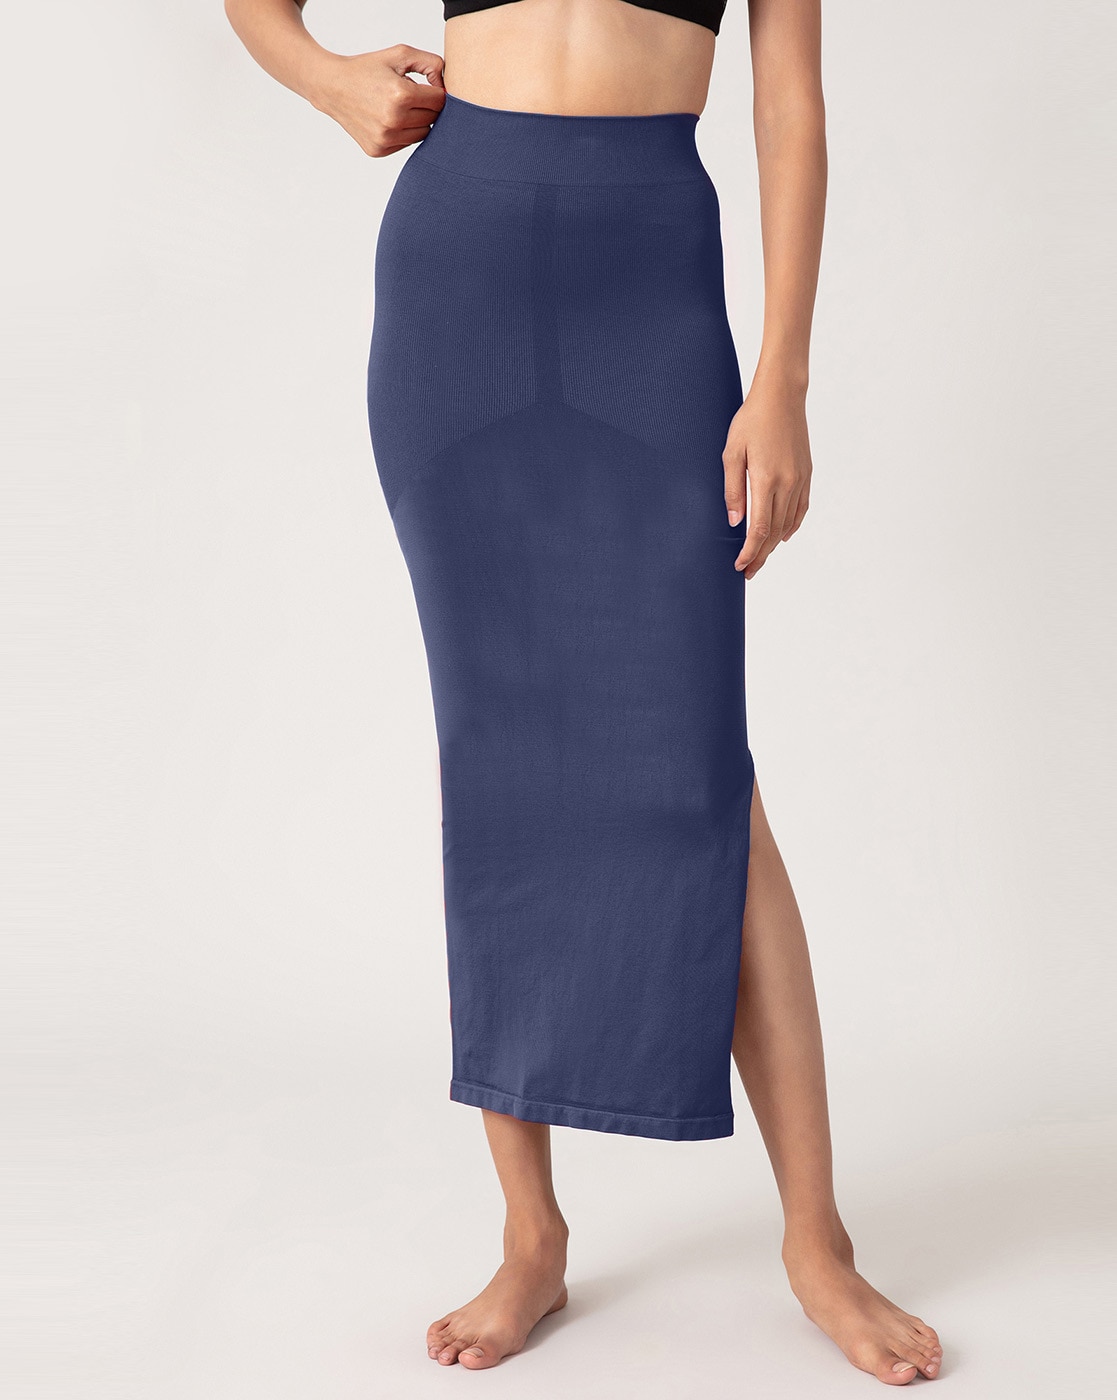 Buy Blue Shapewear for Women by Nykd Online